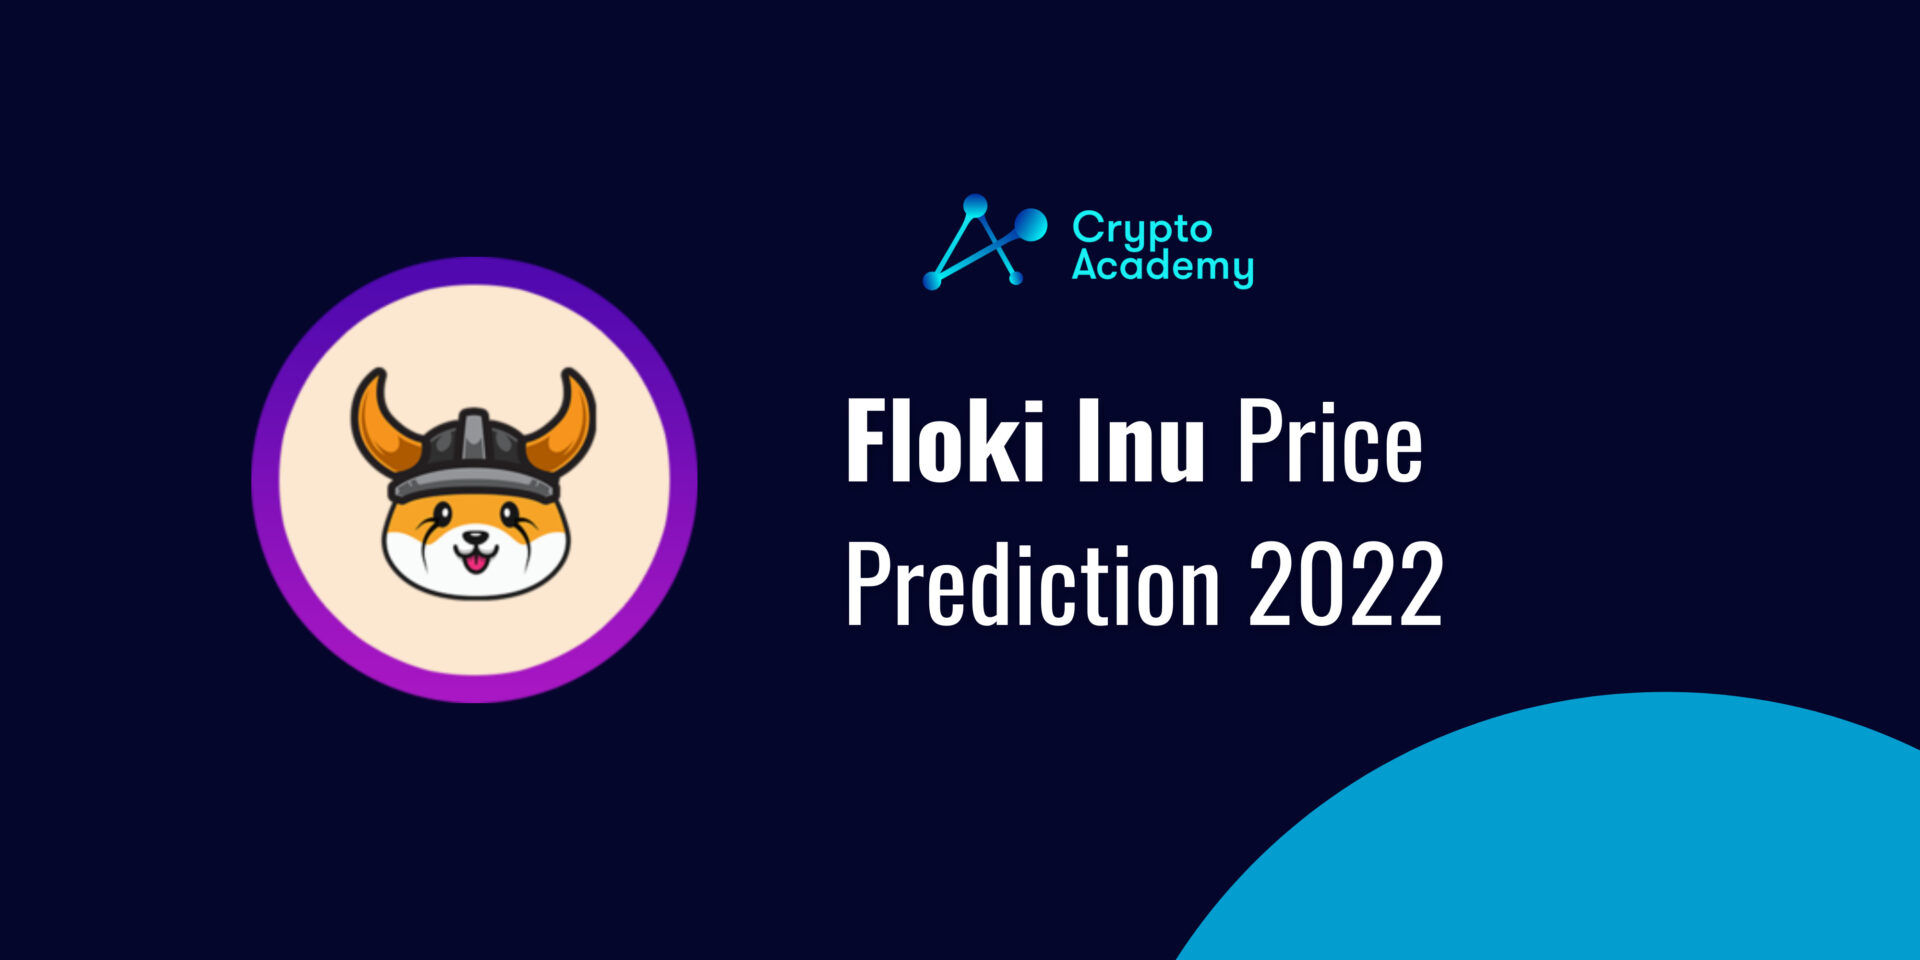 Floki Inu (FLOKI) Price Prediction 2022 and Beyond – Will Floki Eventually Reach $1?